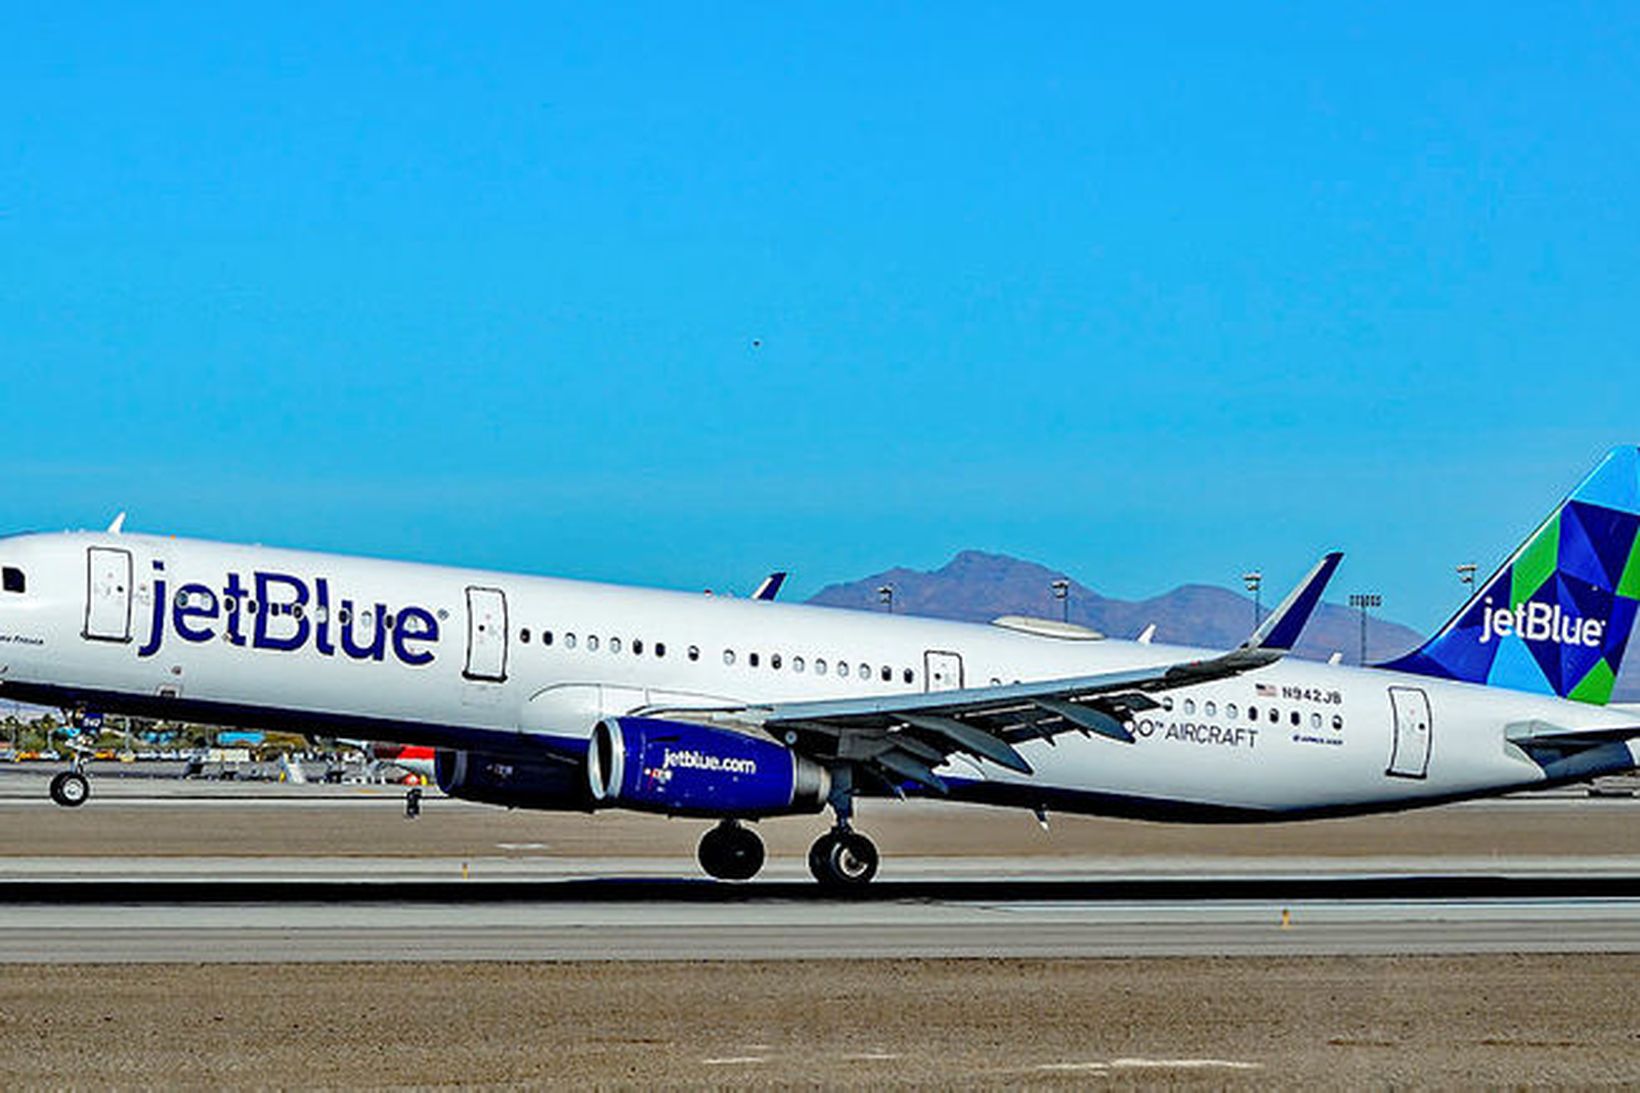 Bandaríska flugfélagið JetBlue hyggst fresta kaupum á Airbus-flugvélum.